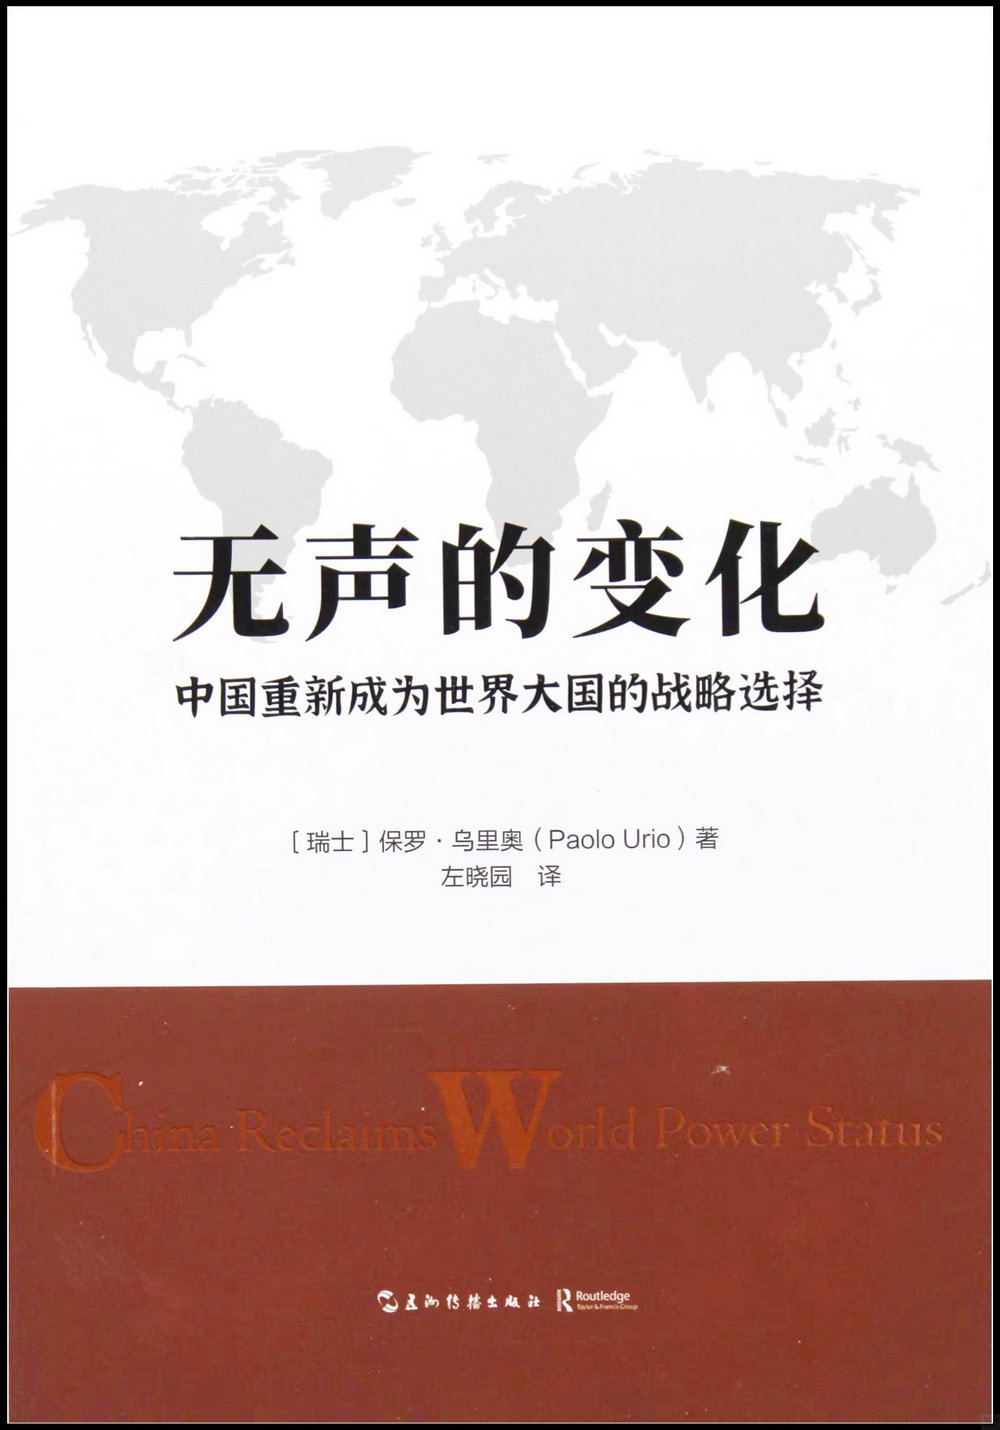 無聲的變化：中國重新成為世界大國的戰略選擇